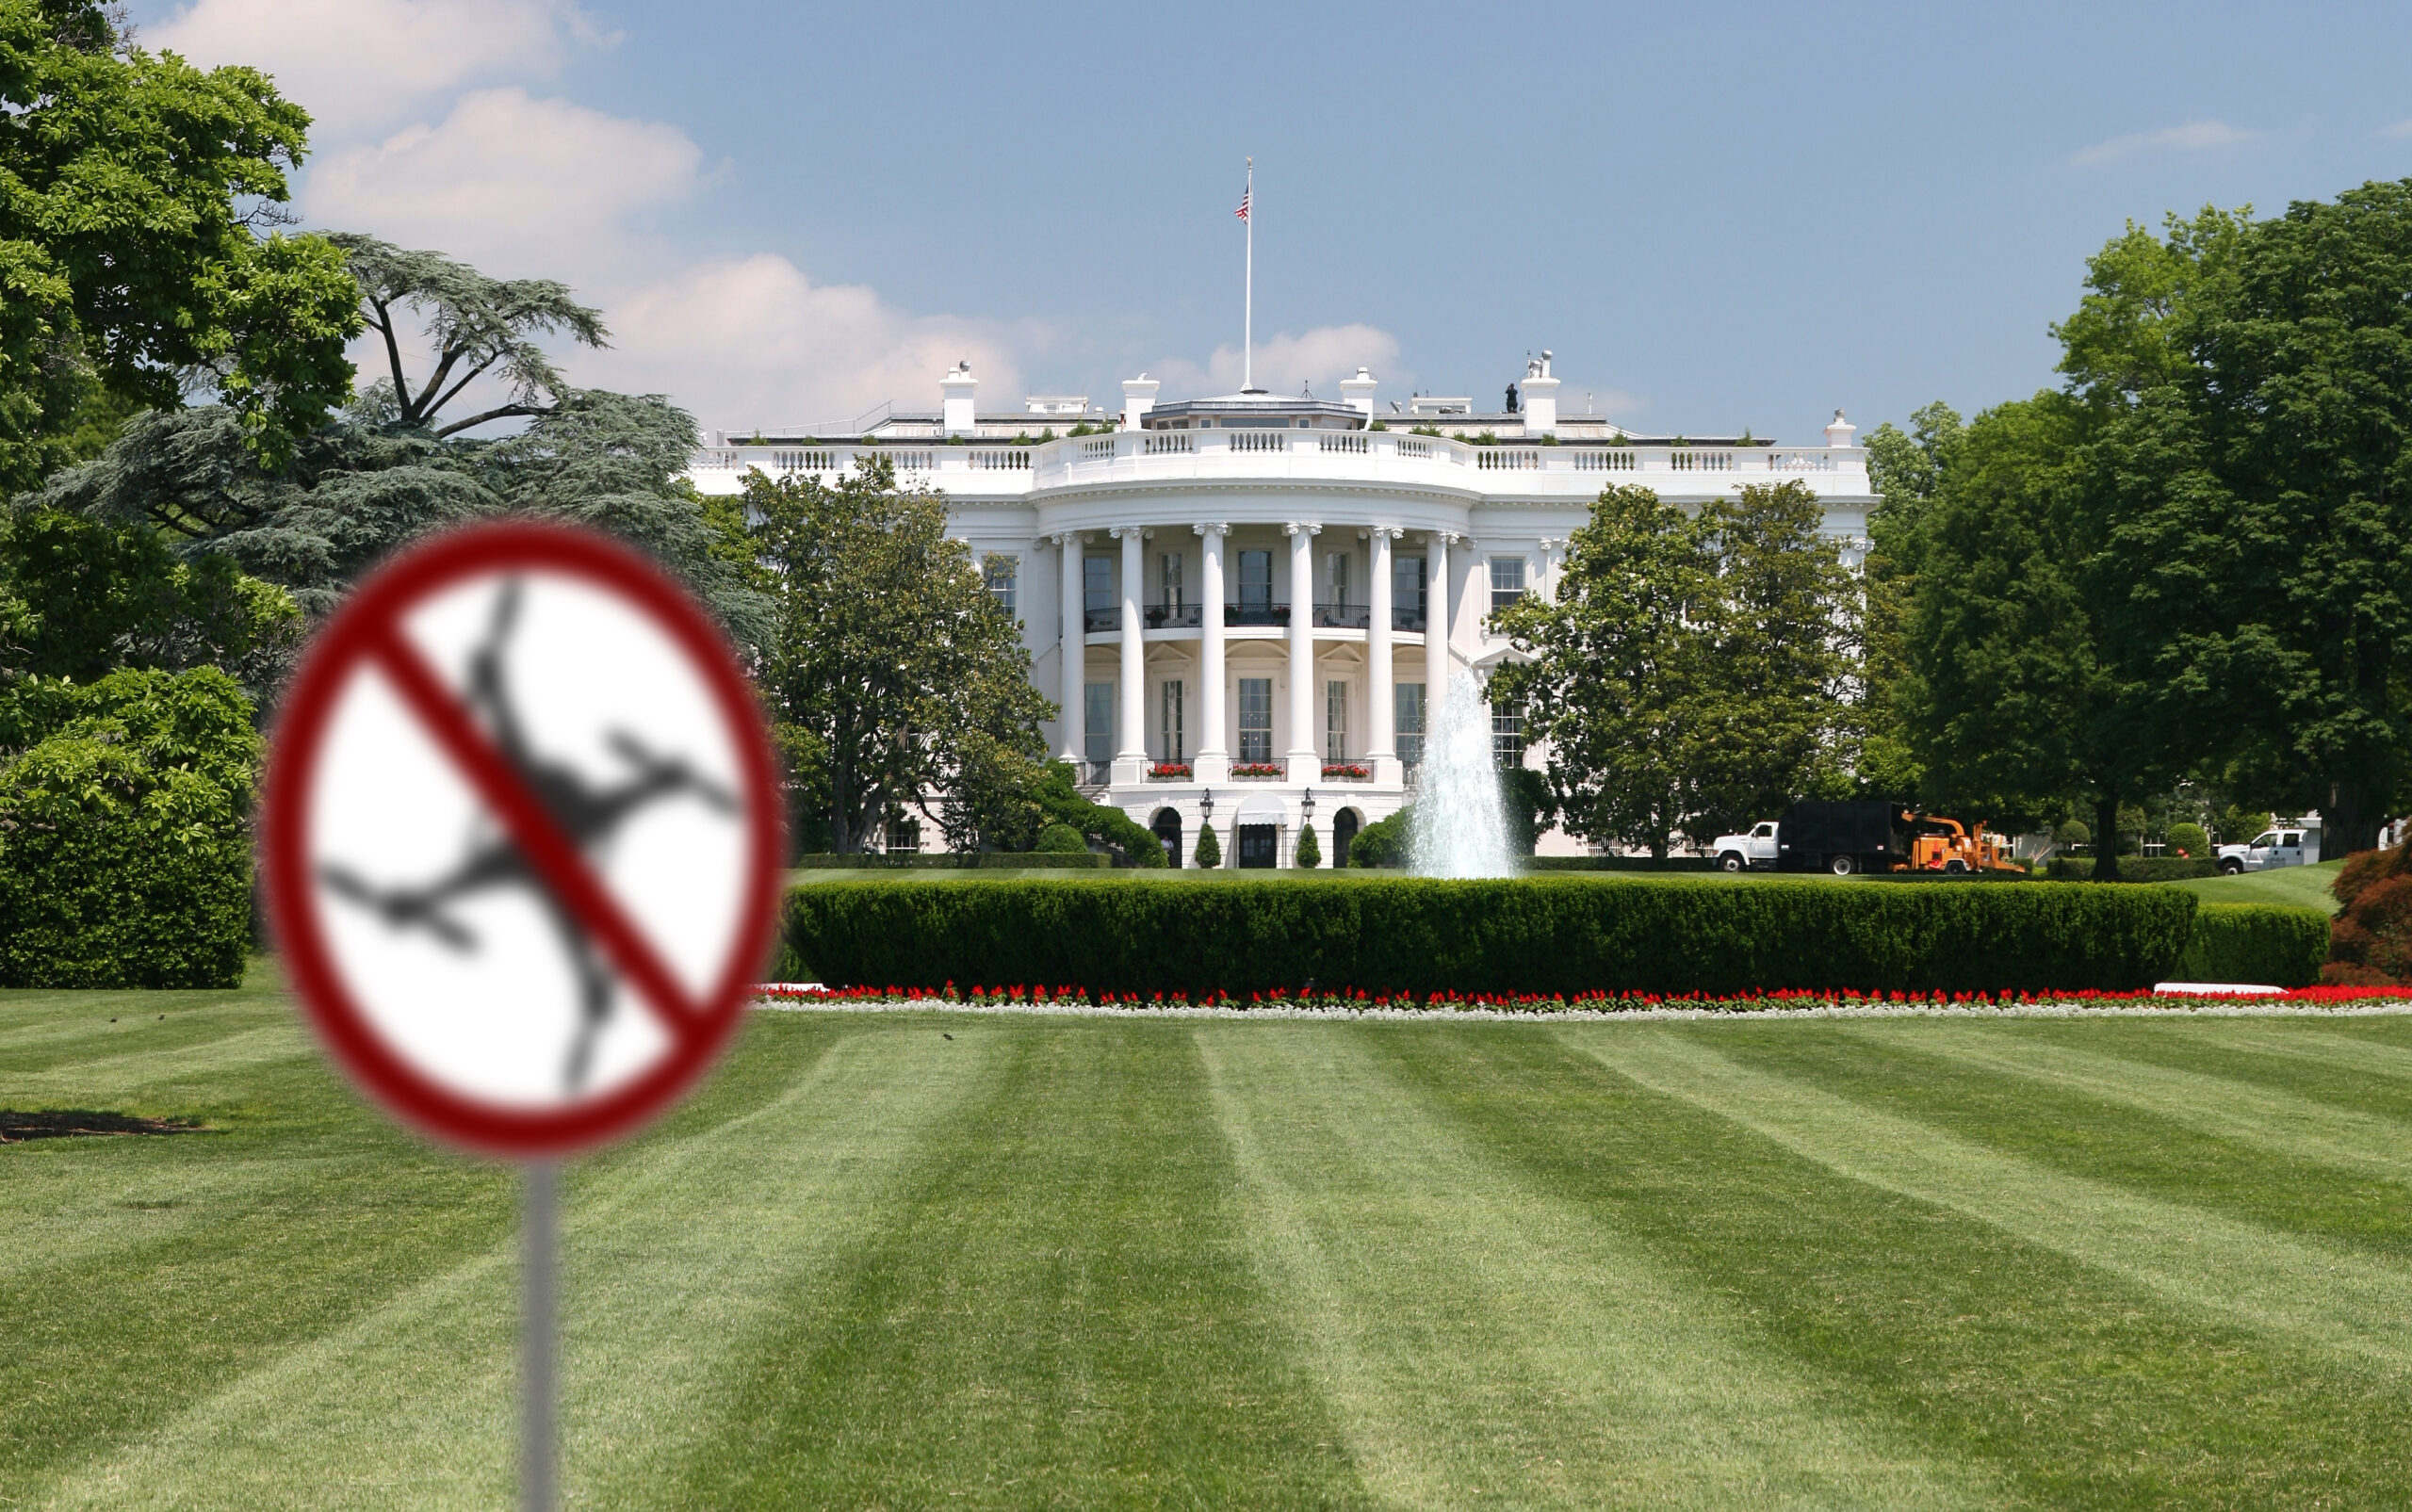 Maison Blanche et drone